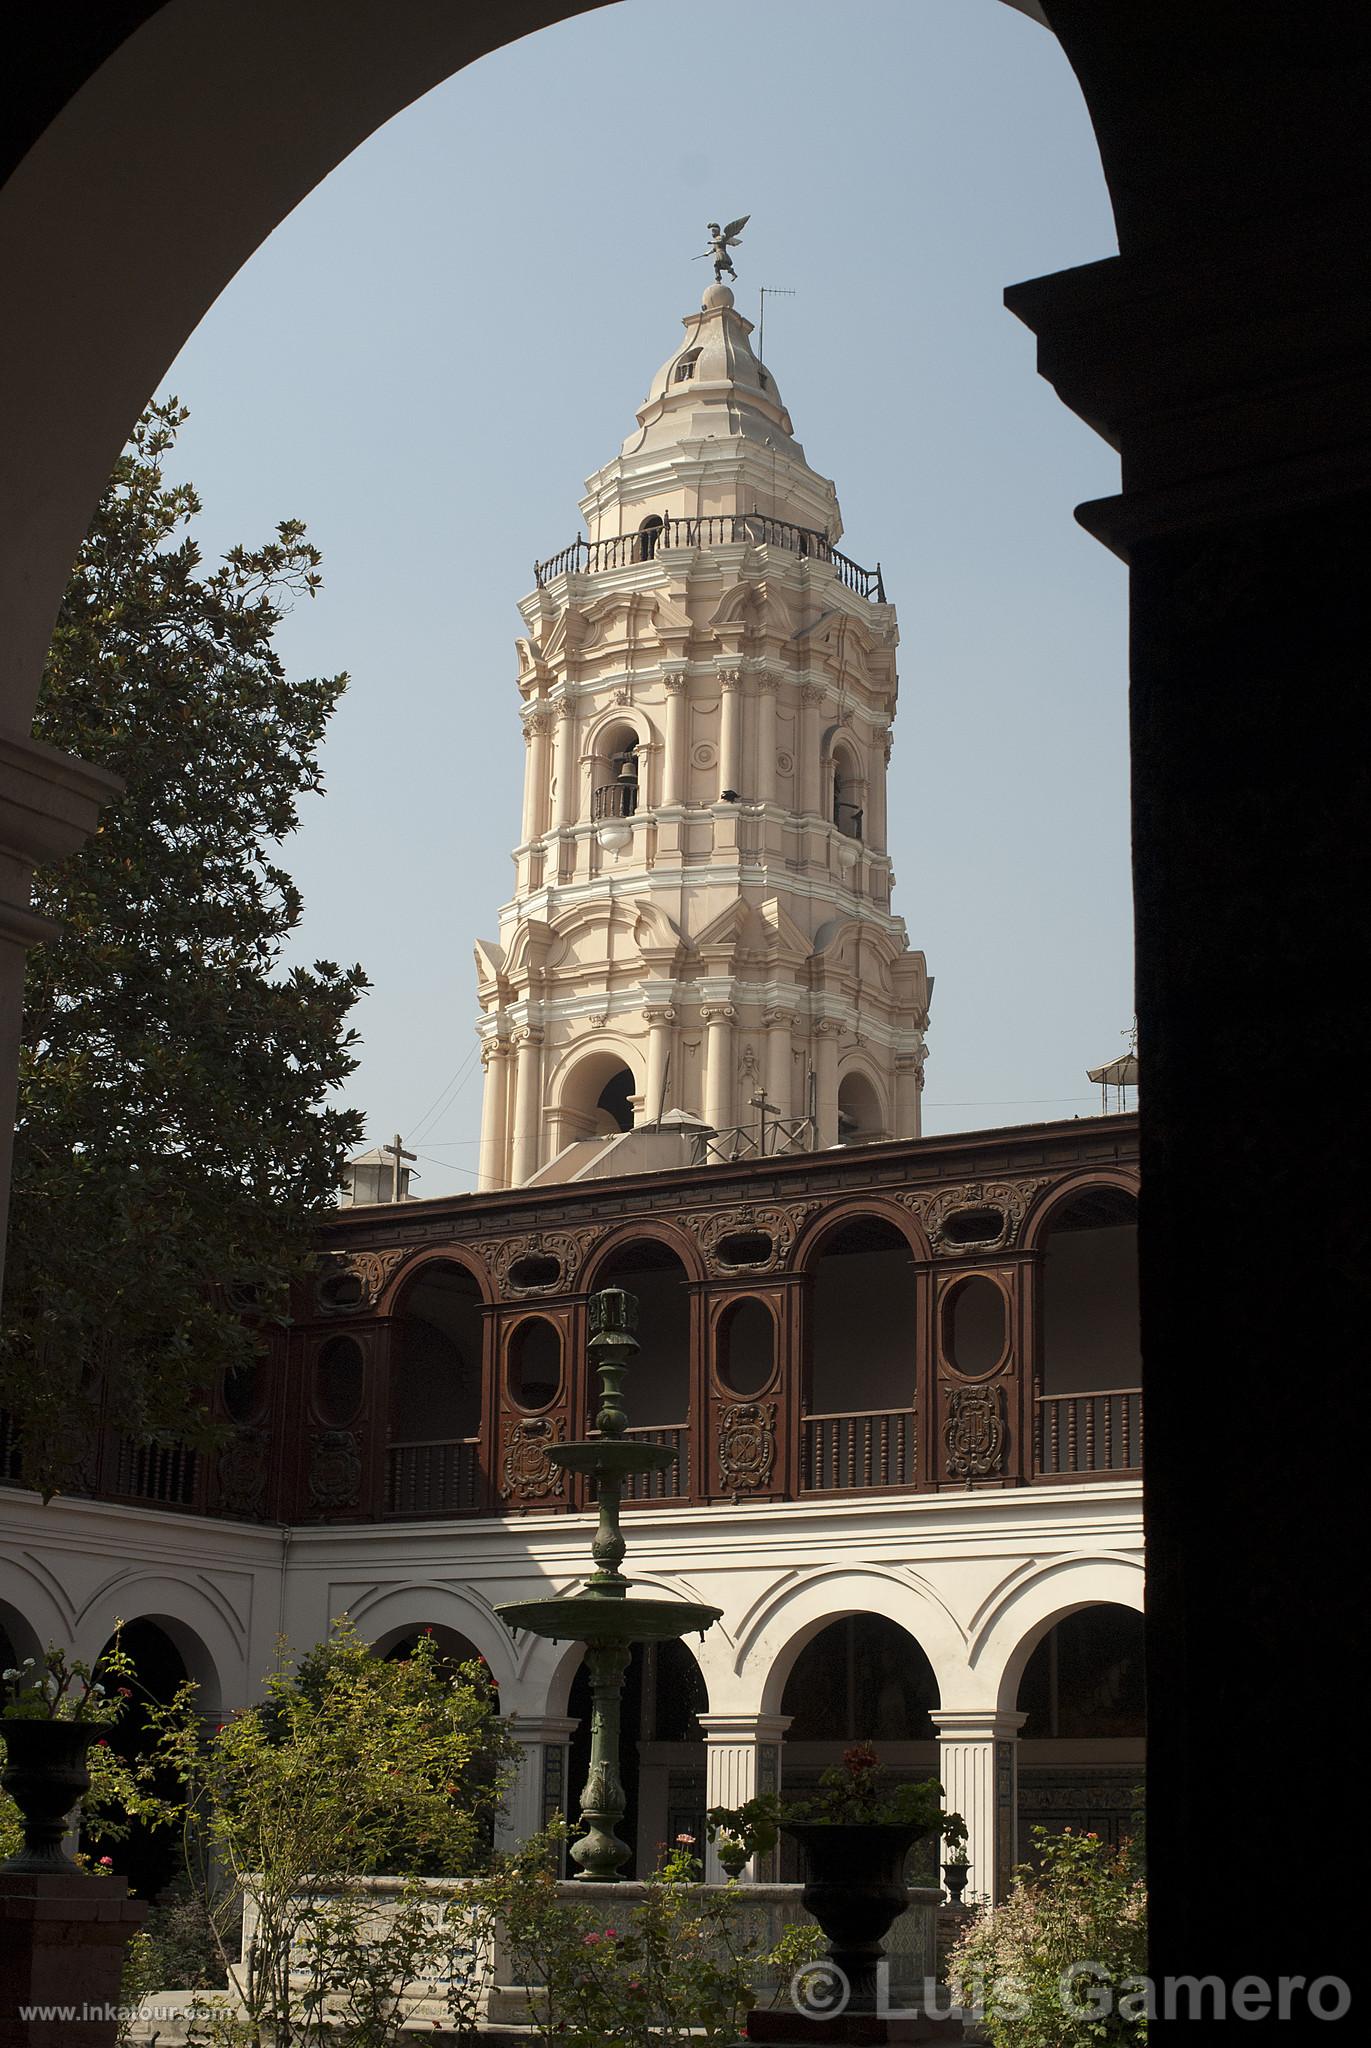 Santo Domingo's convent